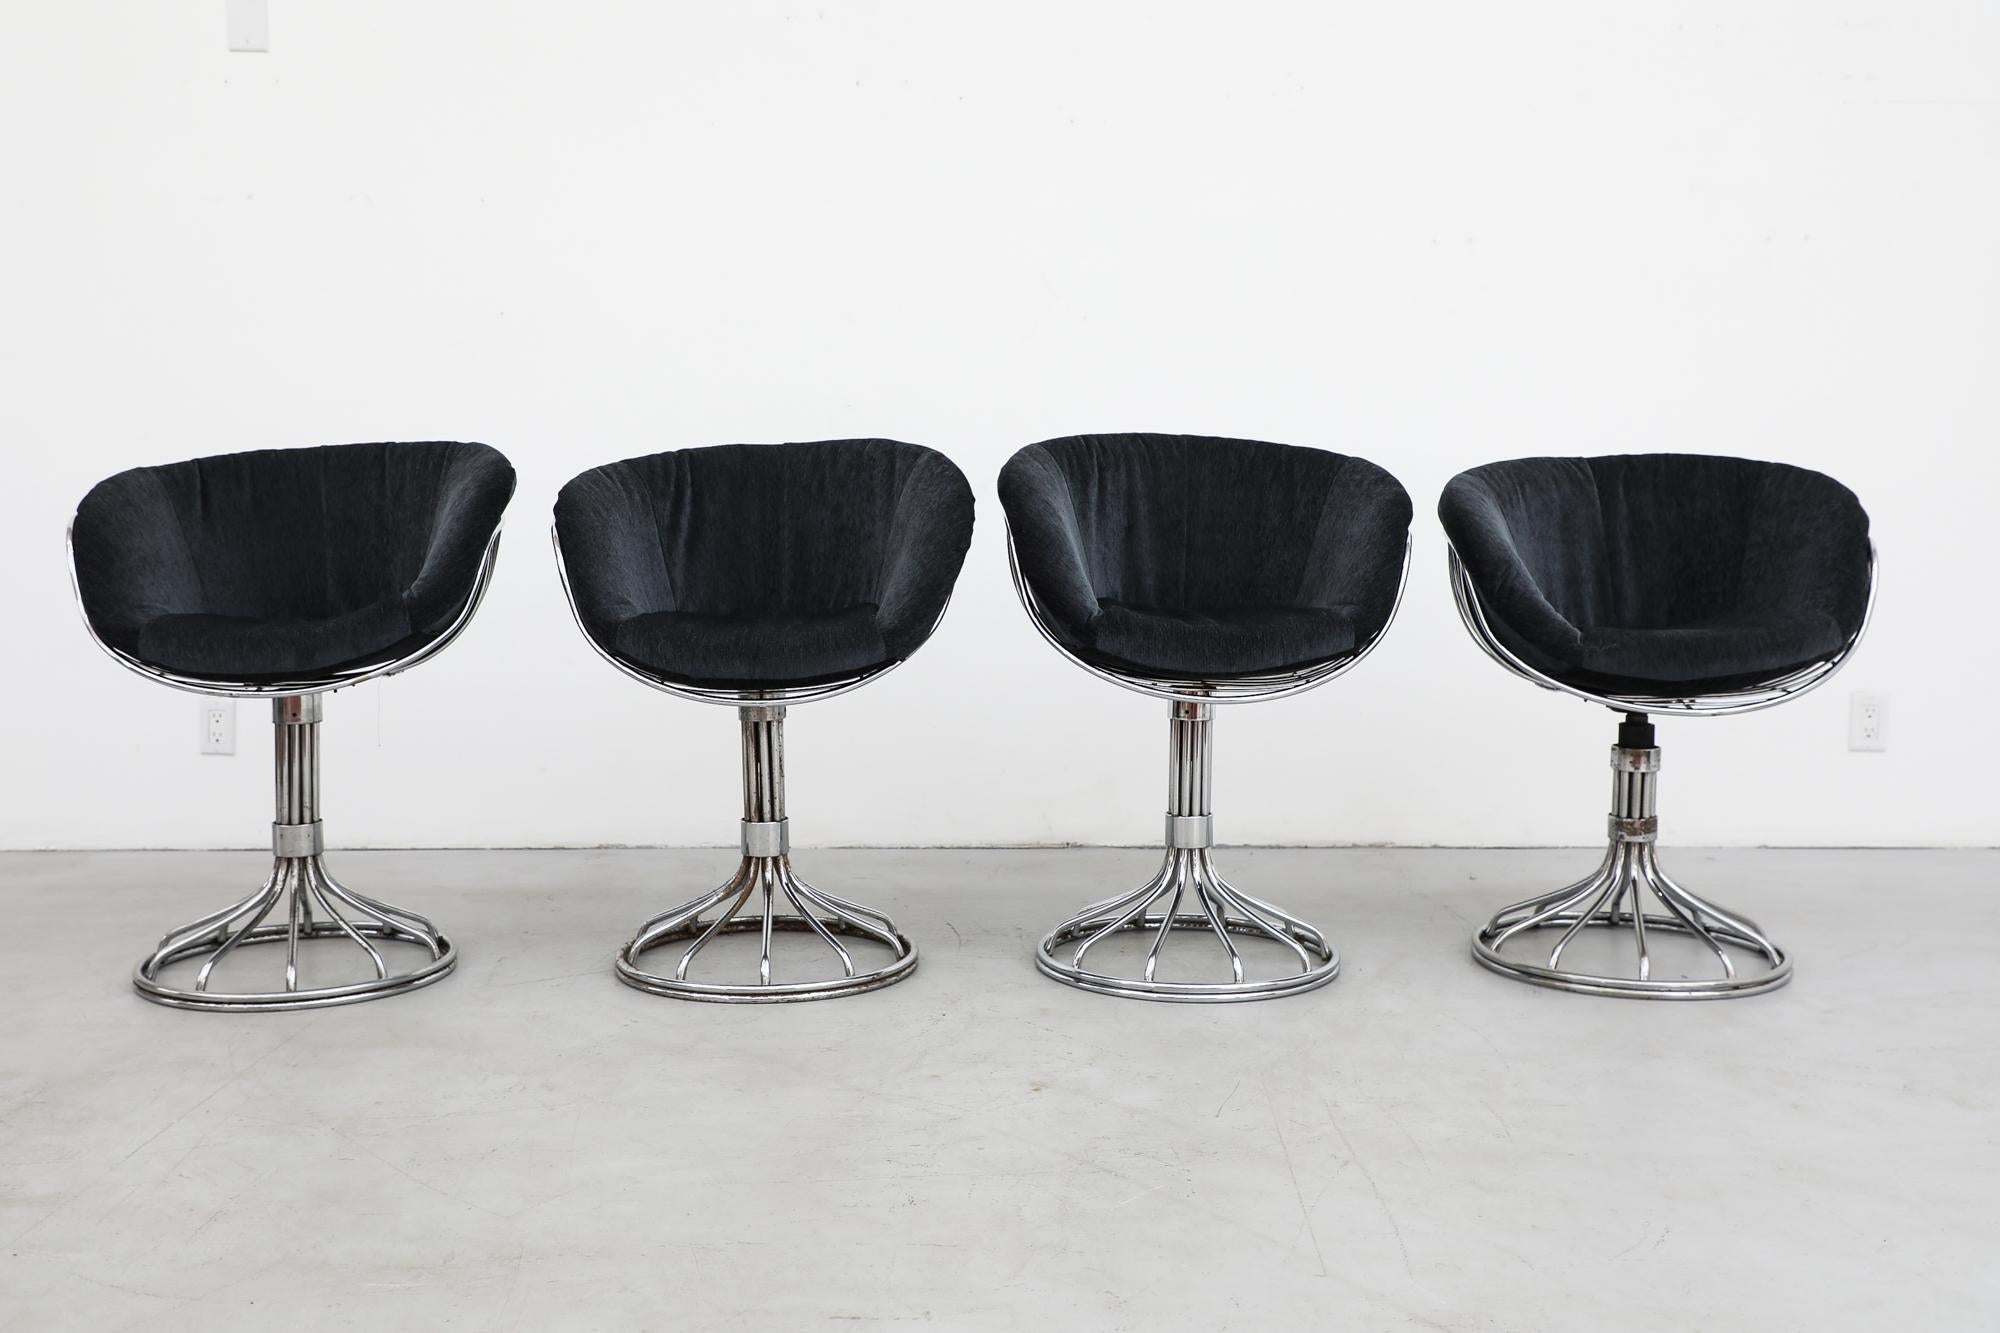 Satz italienischer Stühle mit verchromtem Drahtgestell von Gastone Rinaldi für Rima. Neu gepolsterte Midnight-Velour-Kissen auf schlanken, skulpturalen Drahtgestellen mit drehbaren Sockeln. Die Rahmen sind in SEHR ursprünglichem Zustand mit starker